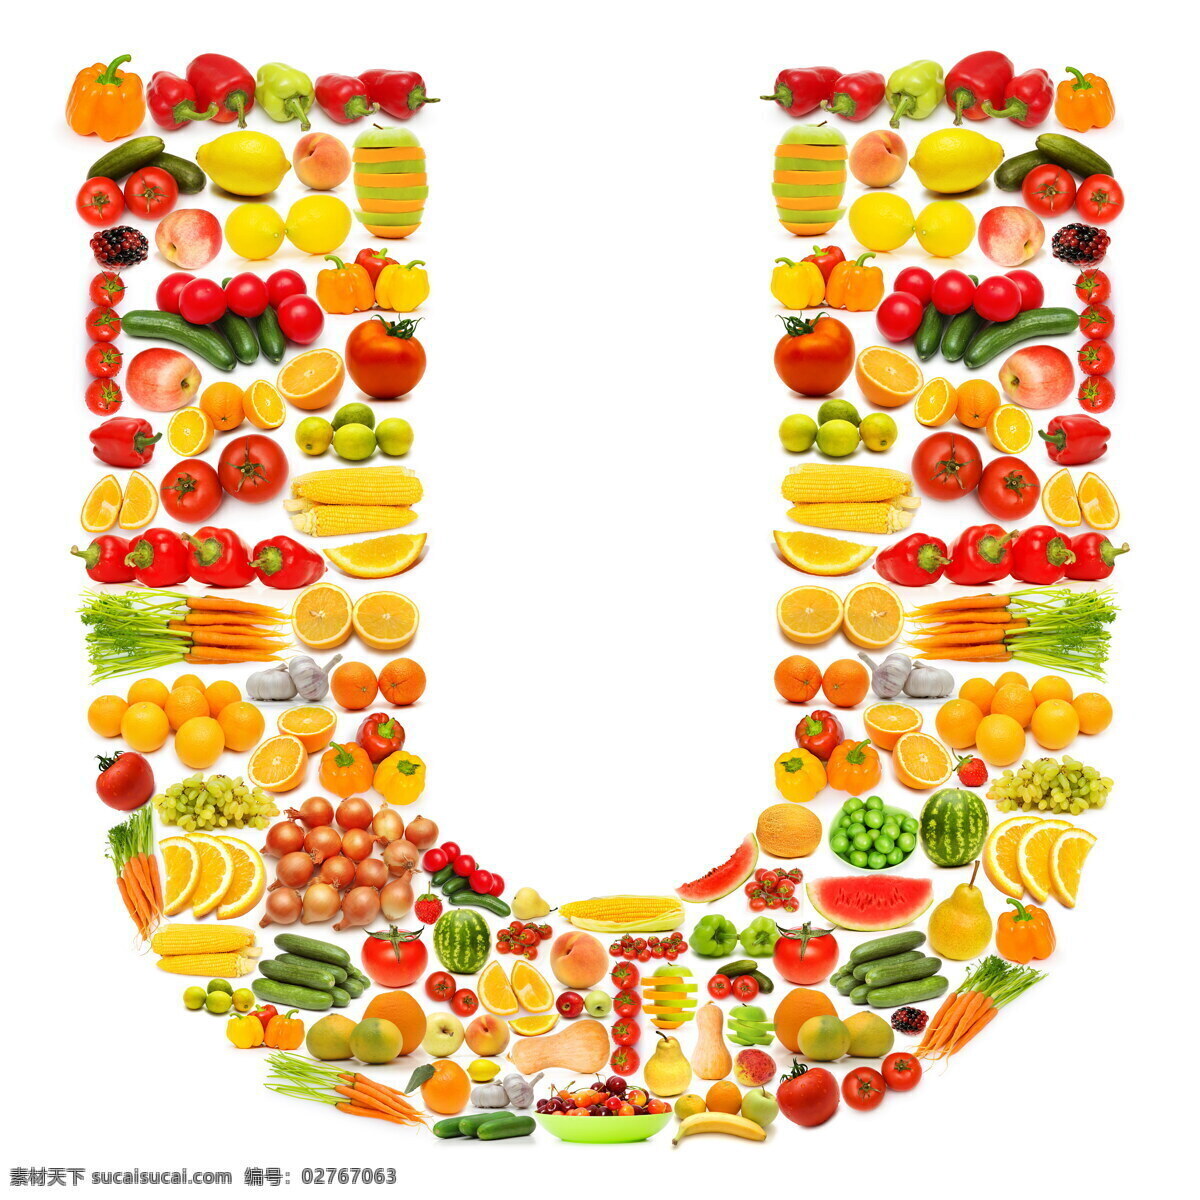 蔬菜水果 组成 字母 u 辣椒 胡萝卜 葡萄 猕猴桃 蔬菜 水果 食物 水果蔬菜 餐饮美食 书画文字 文化艺术 白色